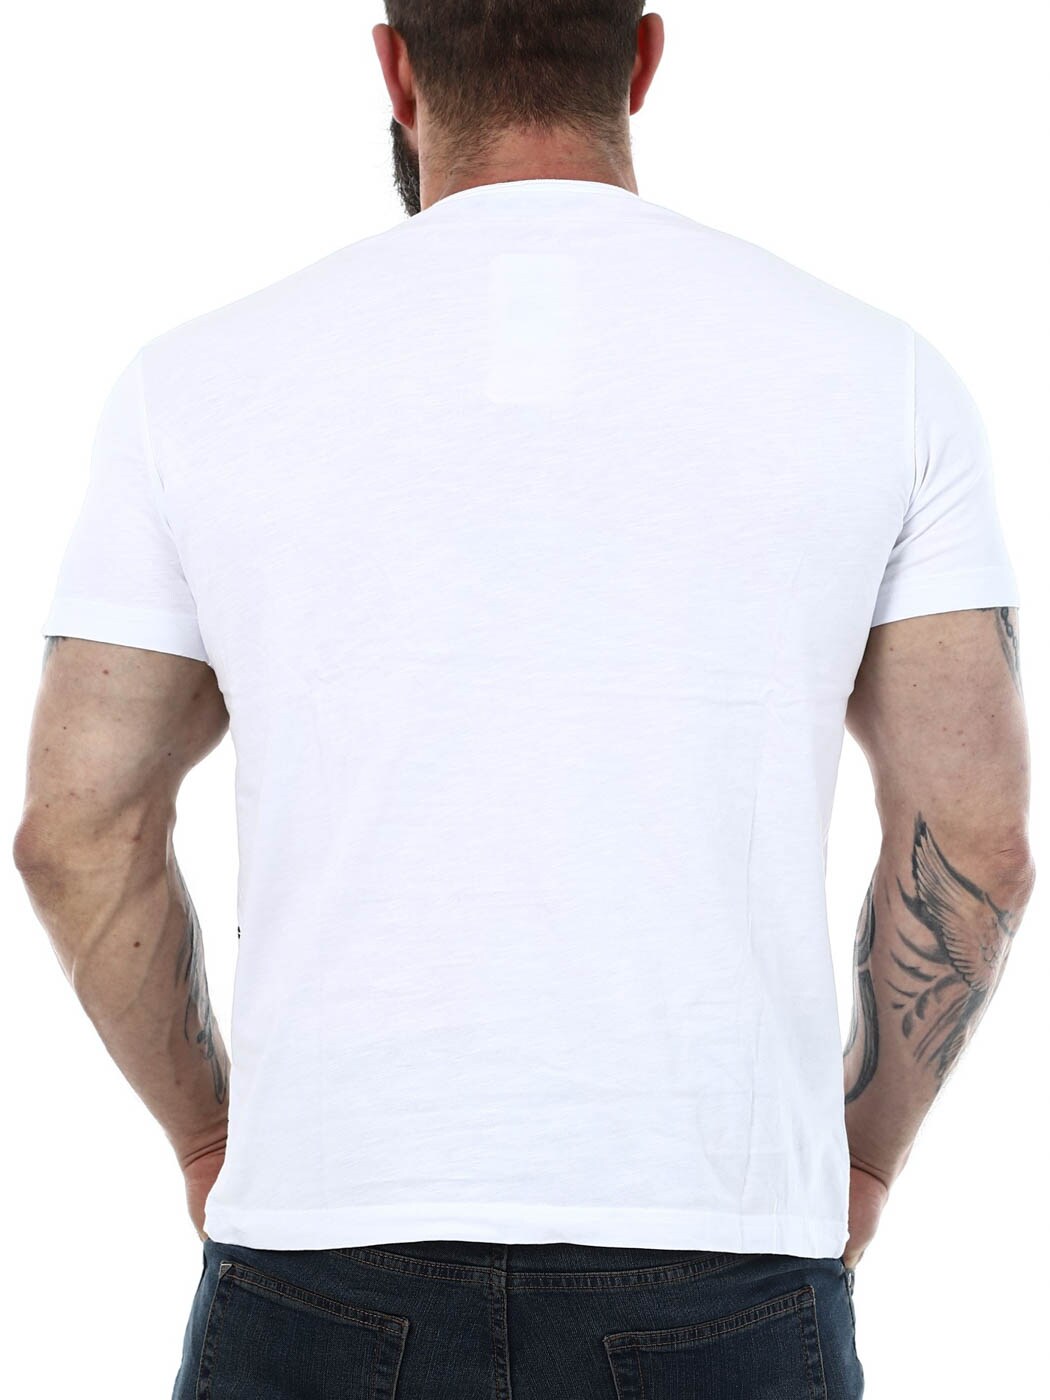 Gasoline Cipo Baxx T-shirt - white_6.jpg